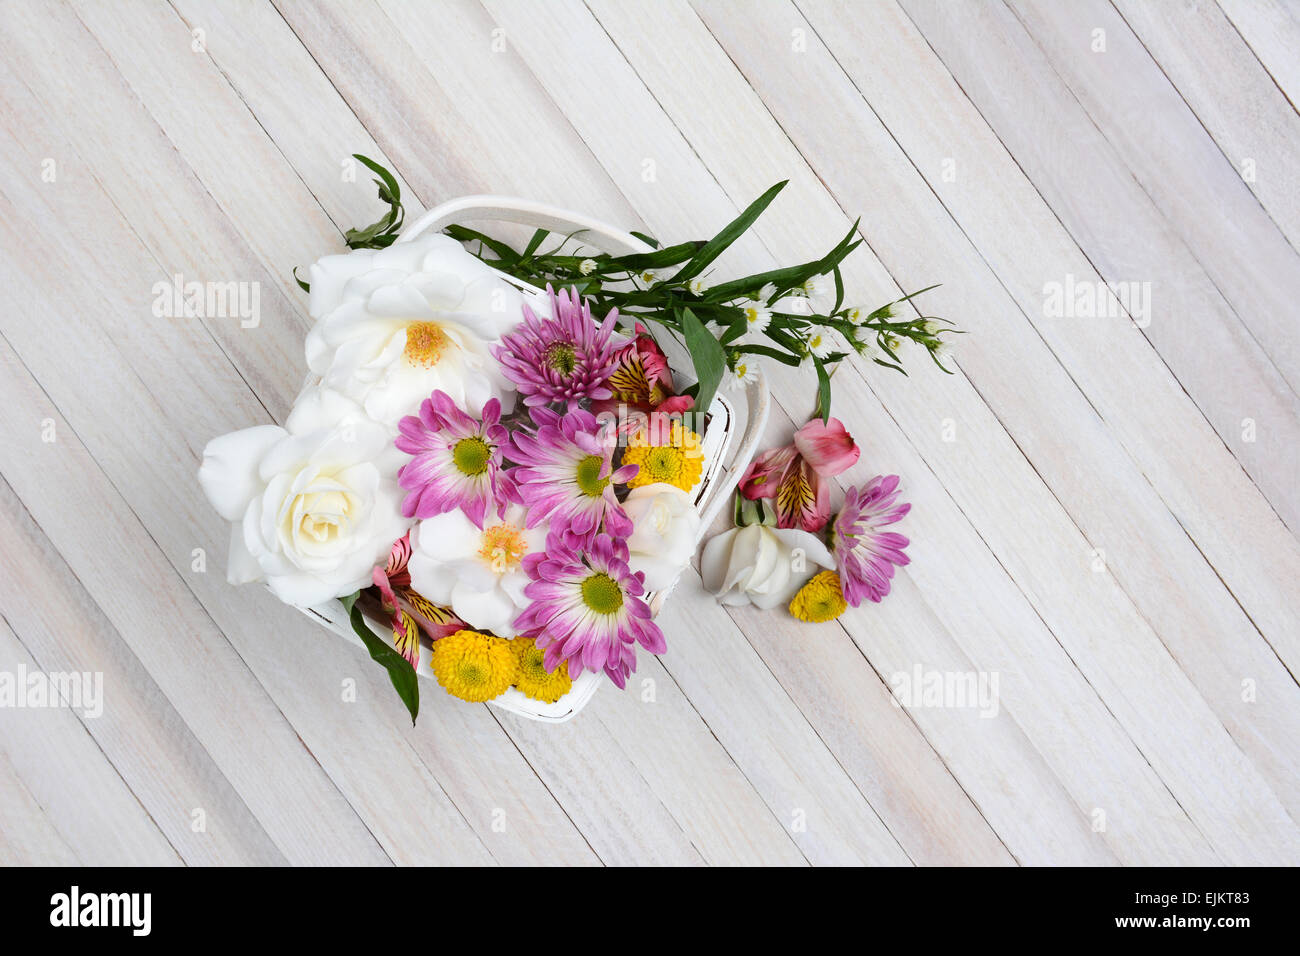 Panier de fleurs de printemps sur une table en bois. Passage tourné en format horizontal avec l'exemplaire de l'espace. Banque D'Images